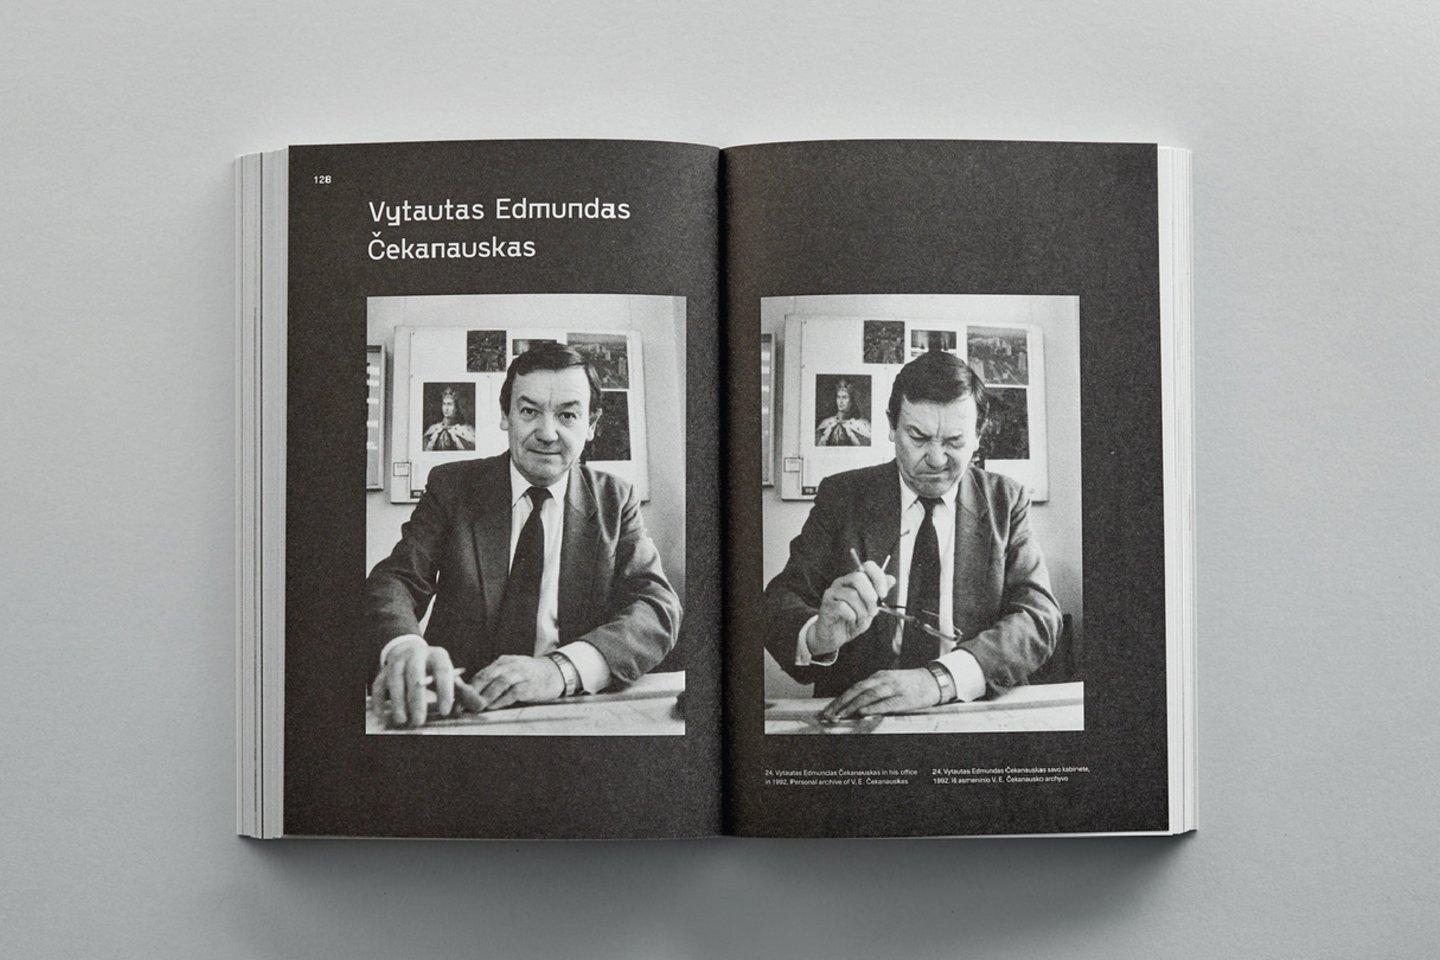 Knygos „Lietuvos architektai pasakoja apie sovietmetį: 1992 m. įrašai“ atvarte – architektas V.E.Čekanauskas. Išleido leidykla „Lapas“.<br>  R.Daškevičiaus nuotr.